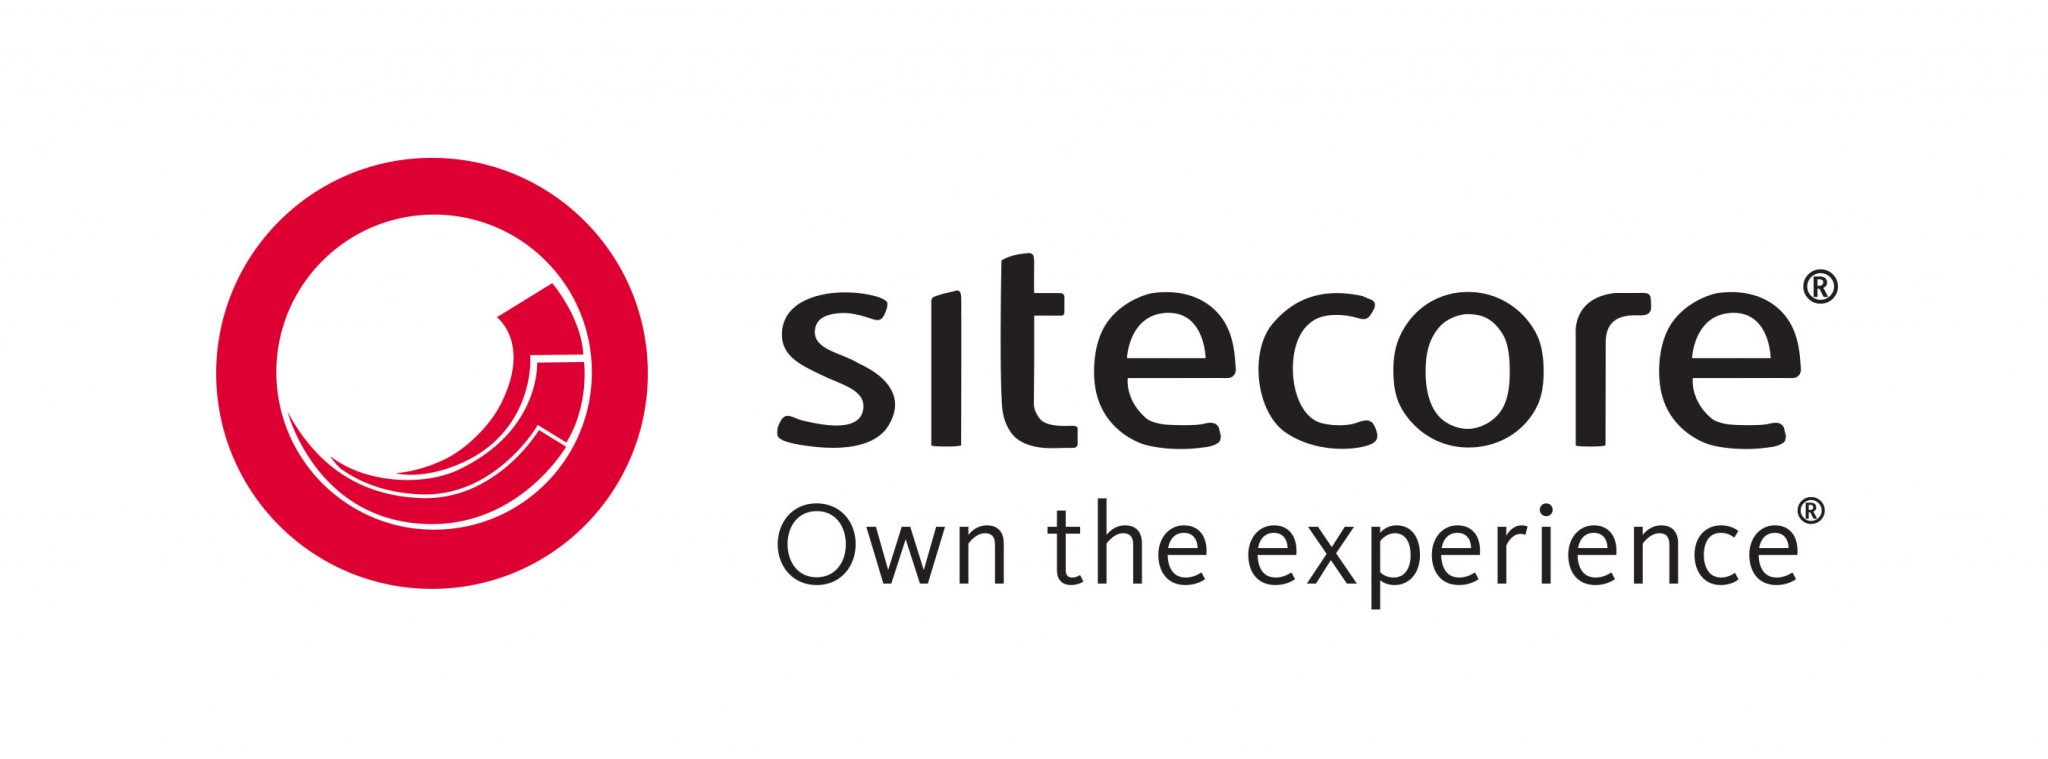 Sitecore-logo-image